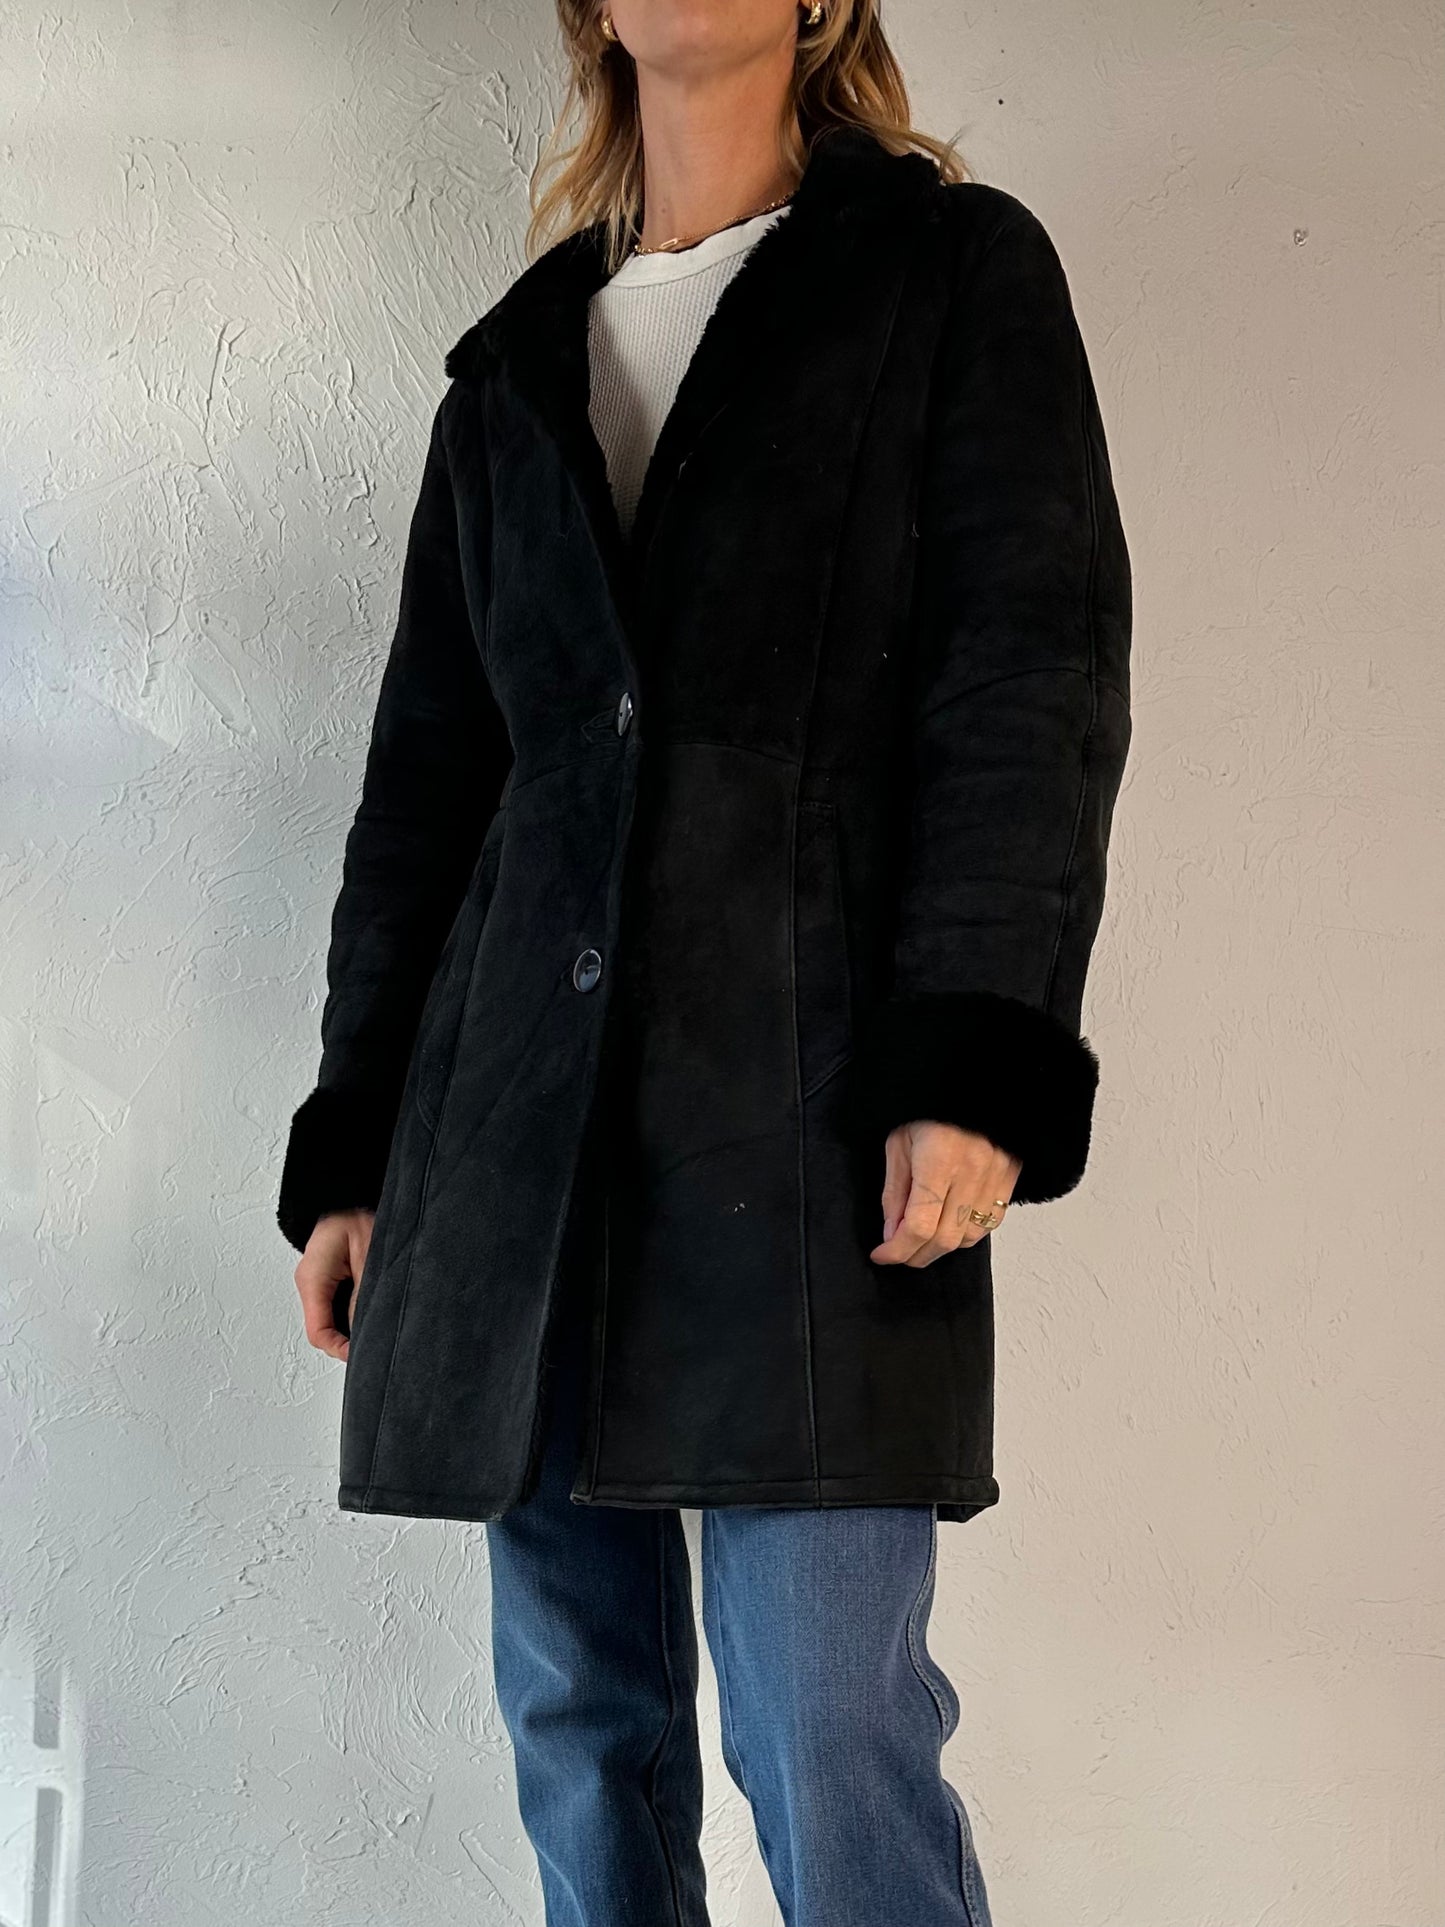 Y2k 'Danier' Black Suede Leather Shearling Lined Jacket / XS